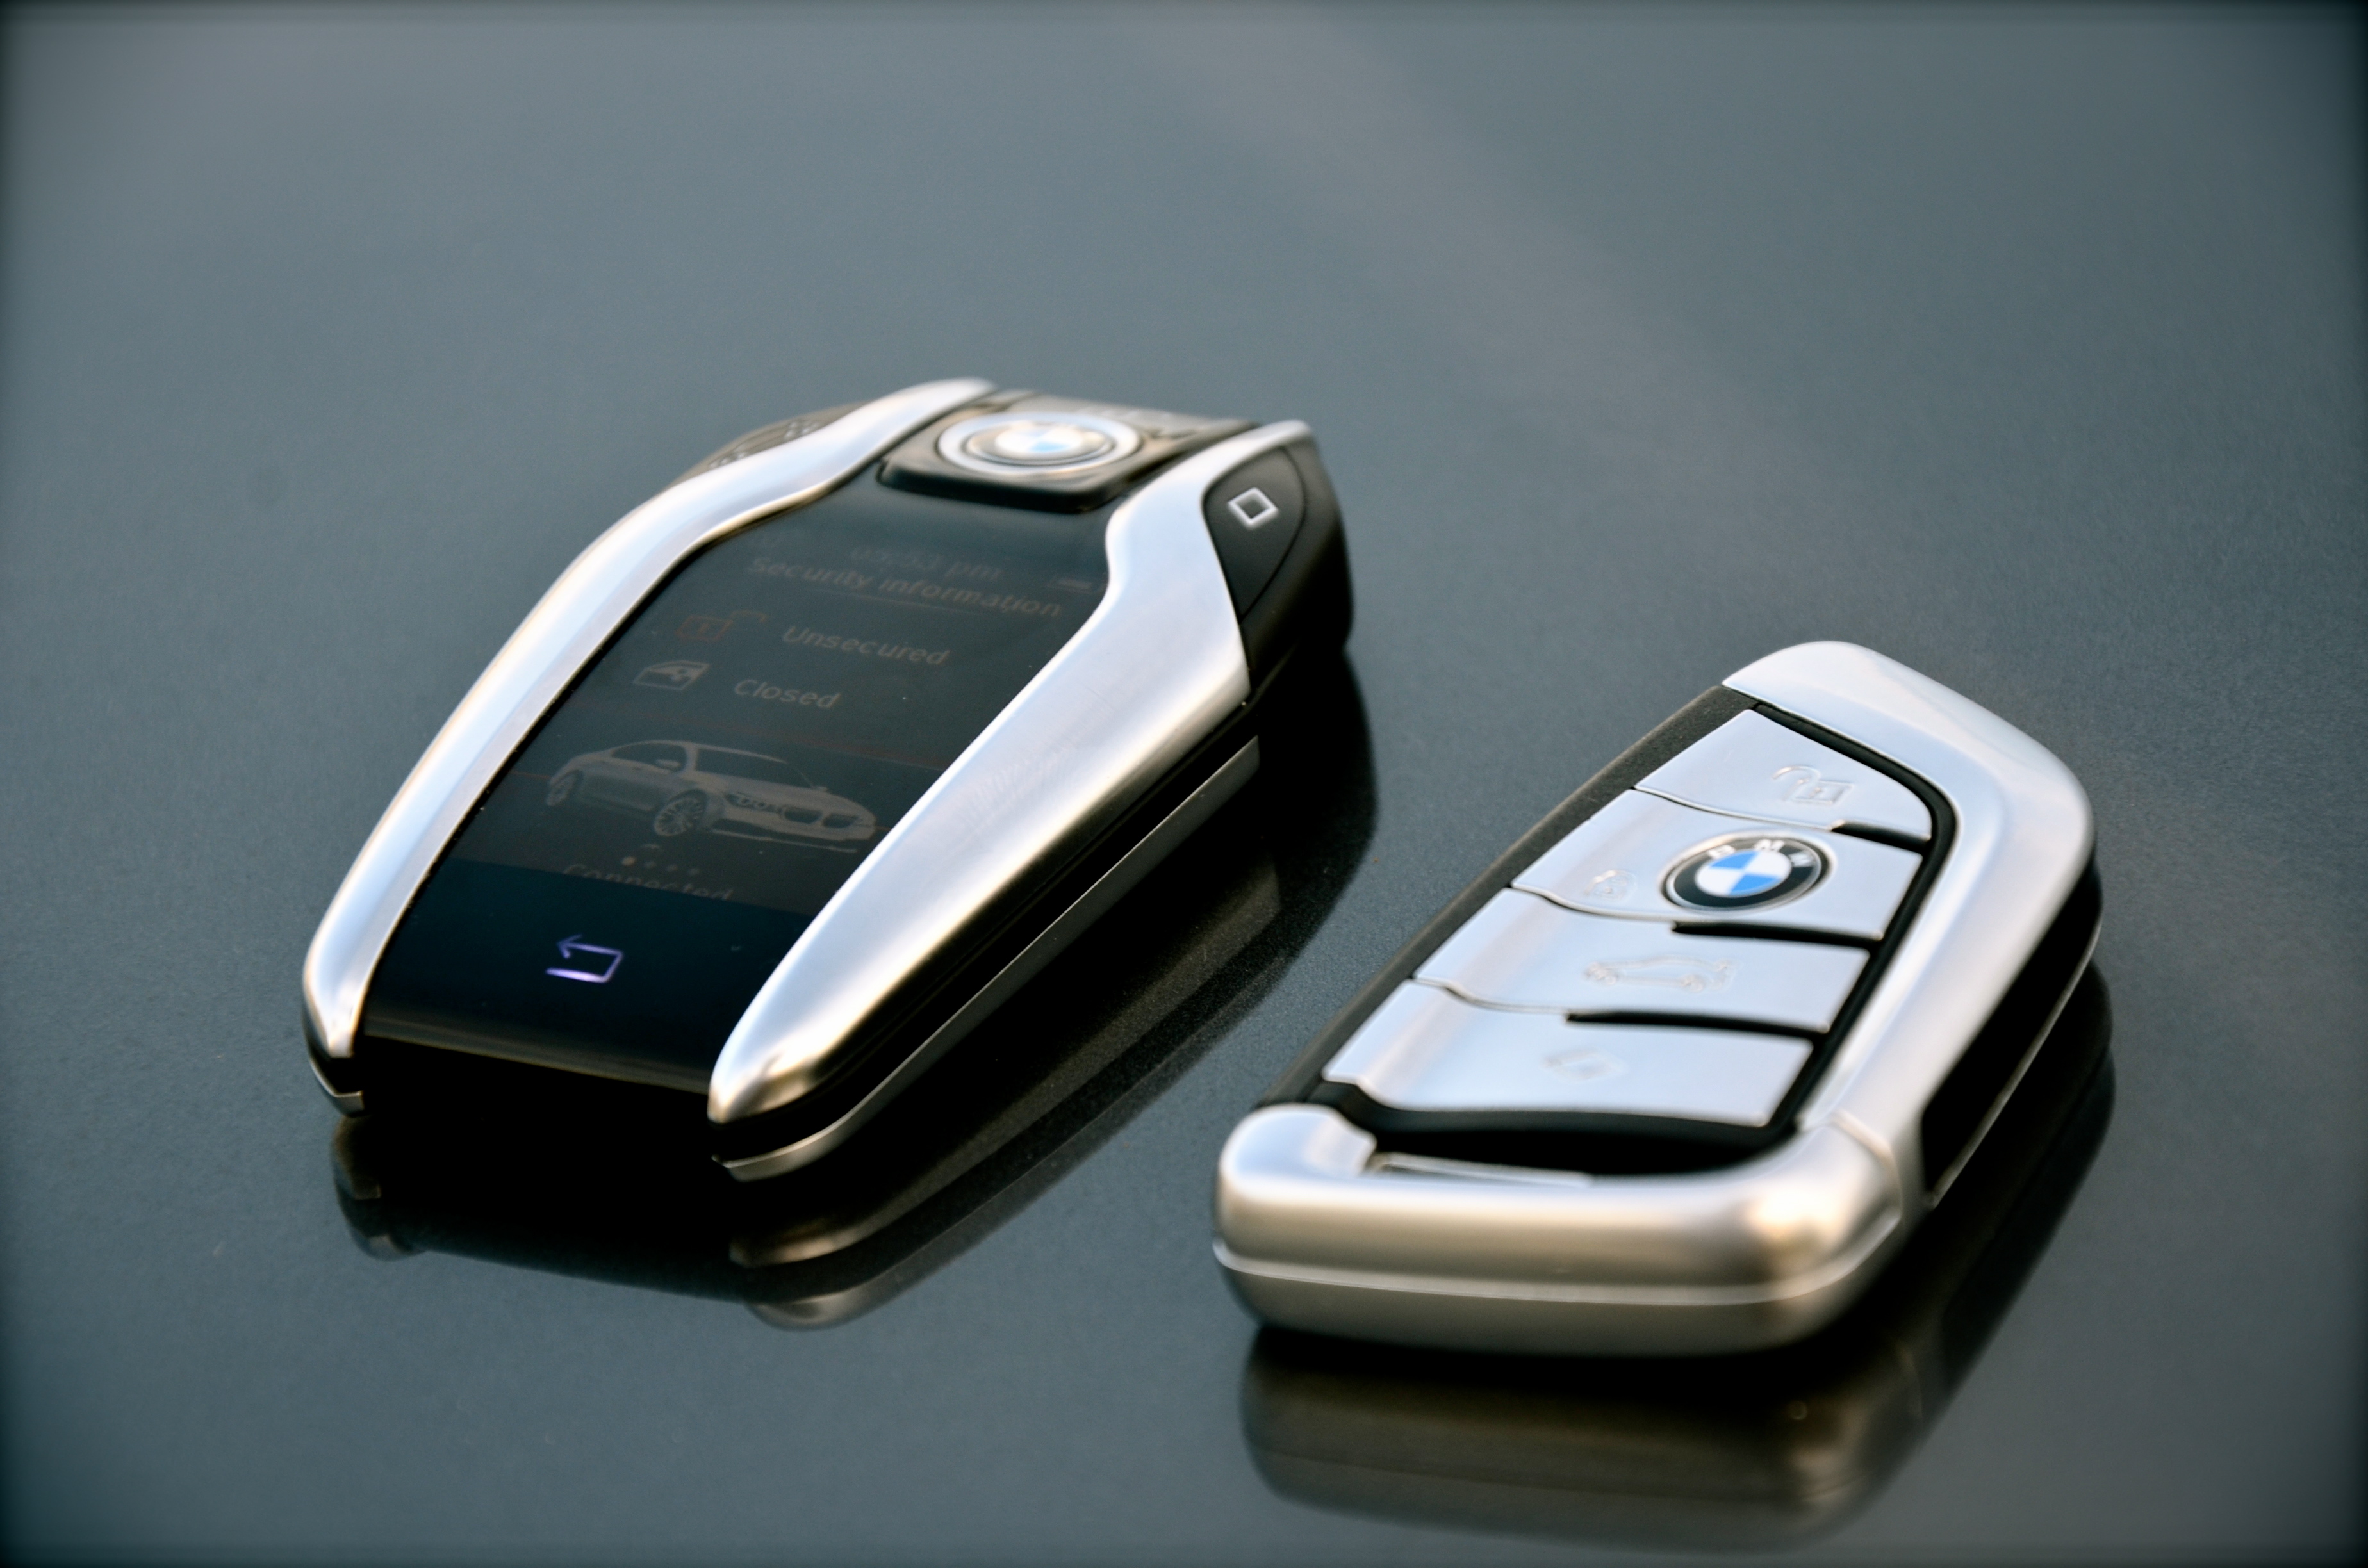 Keys of BMW 750Li – Dubaicravings.com